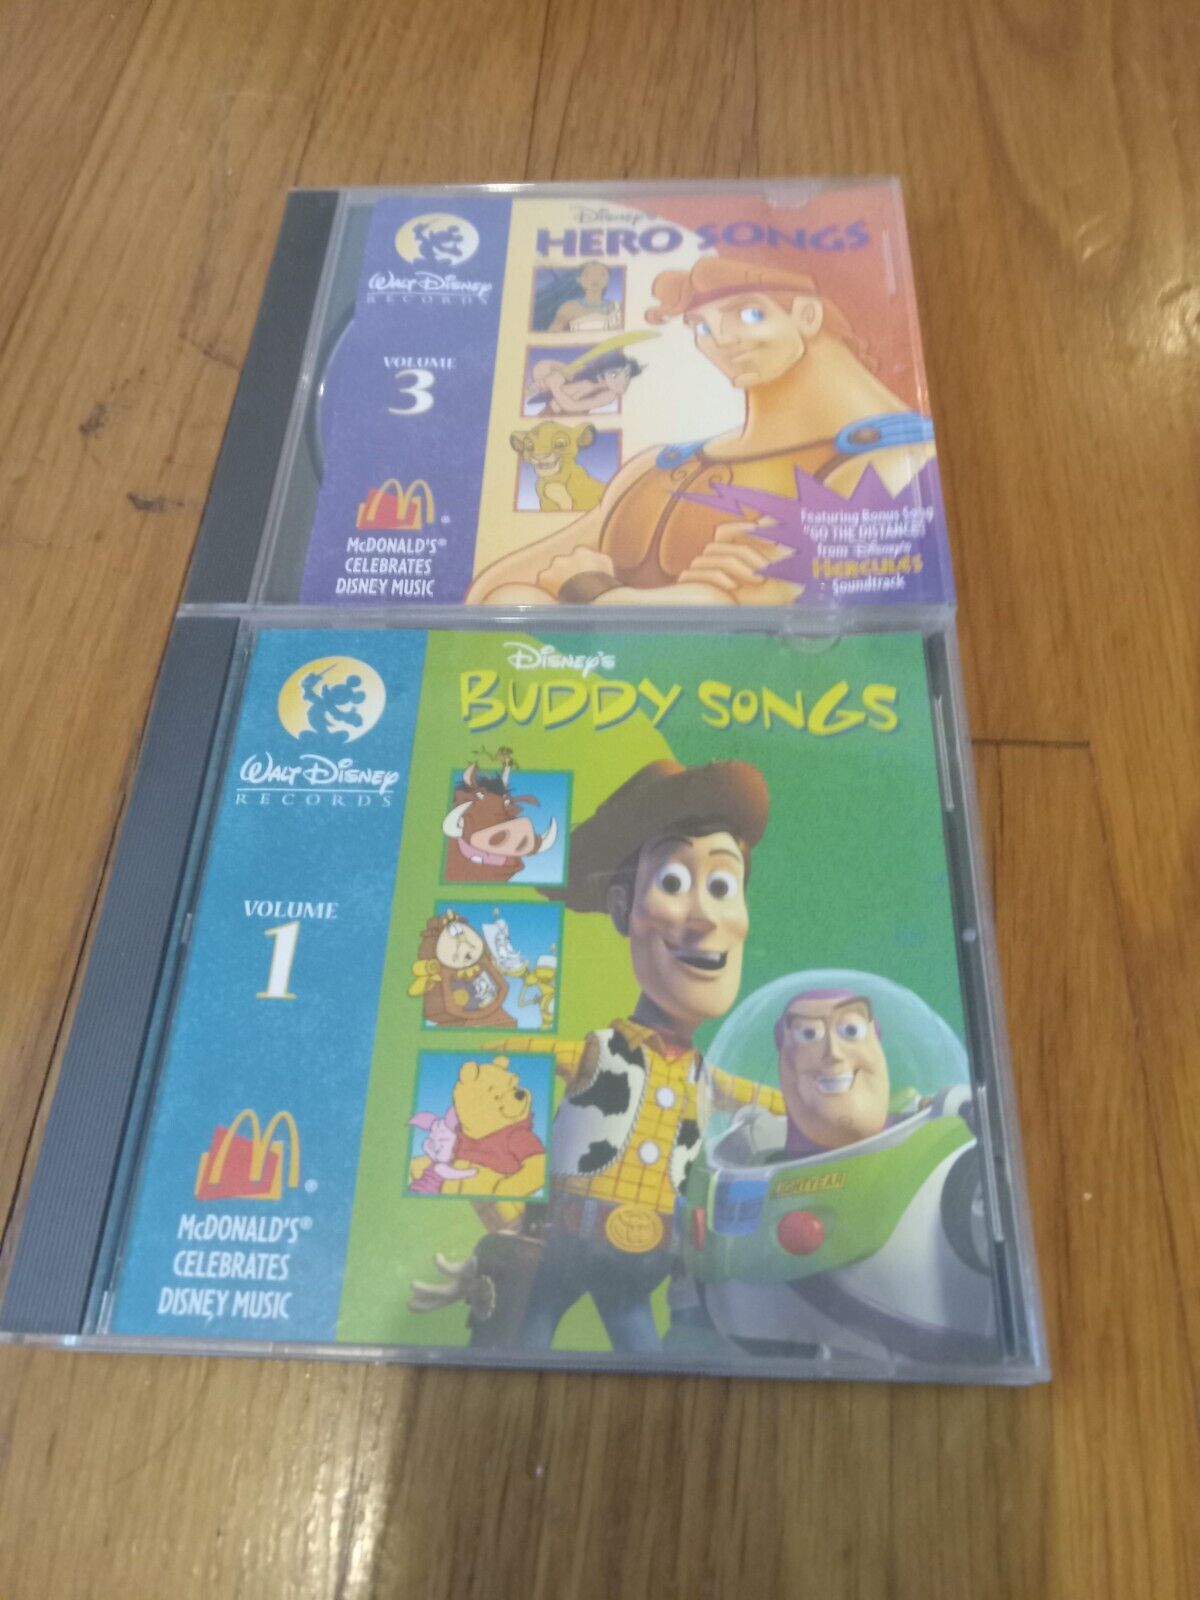 Disney Buddy Songs and Hero Songs. 2 cds